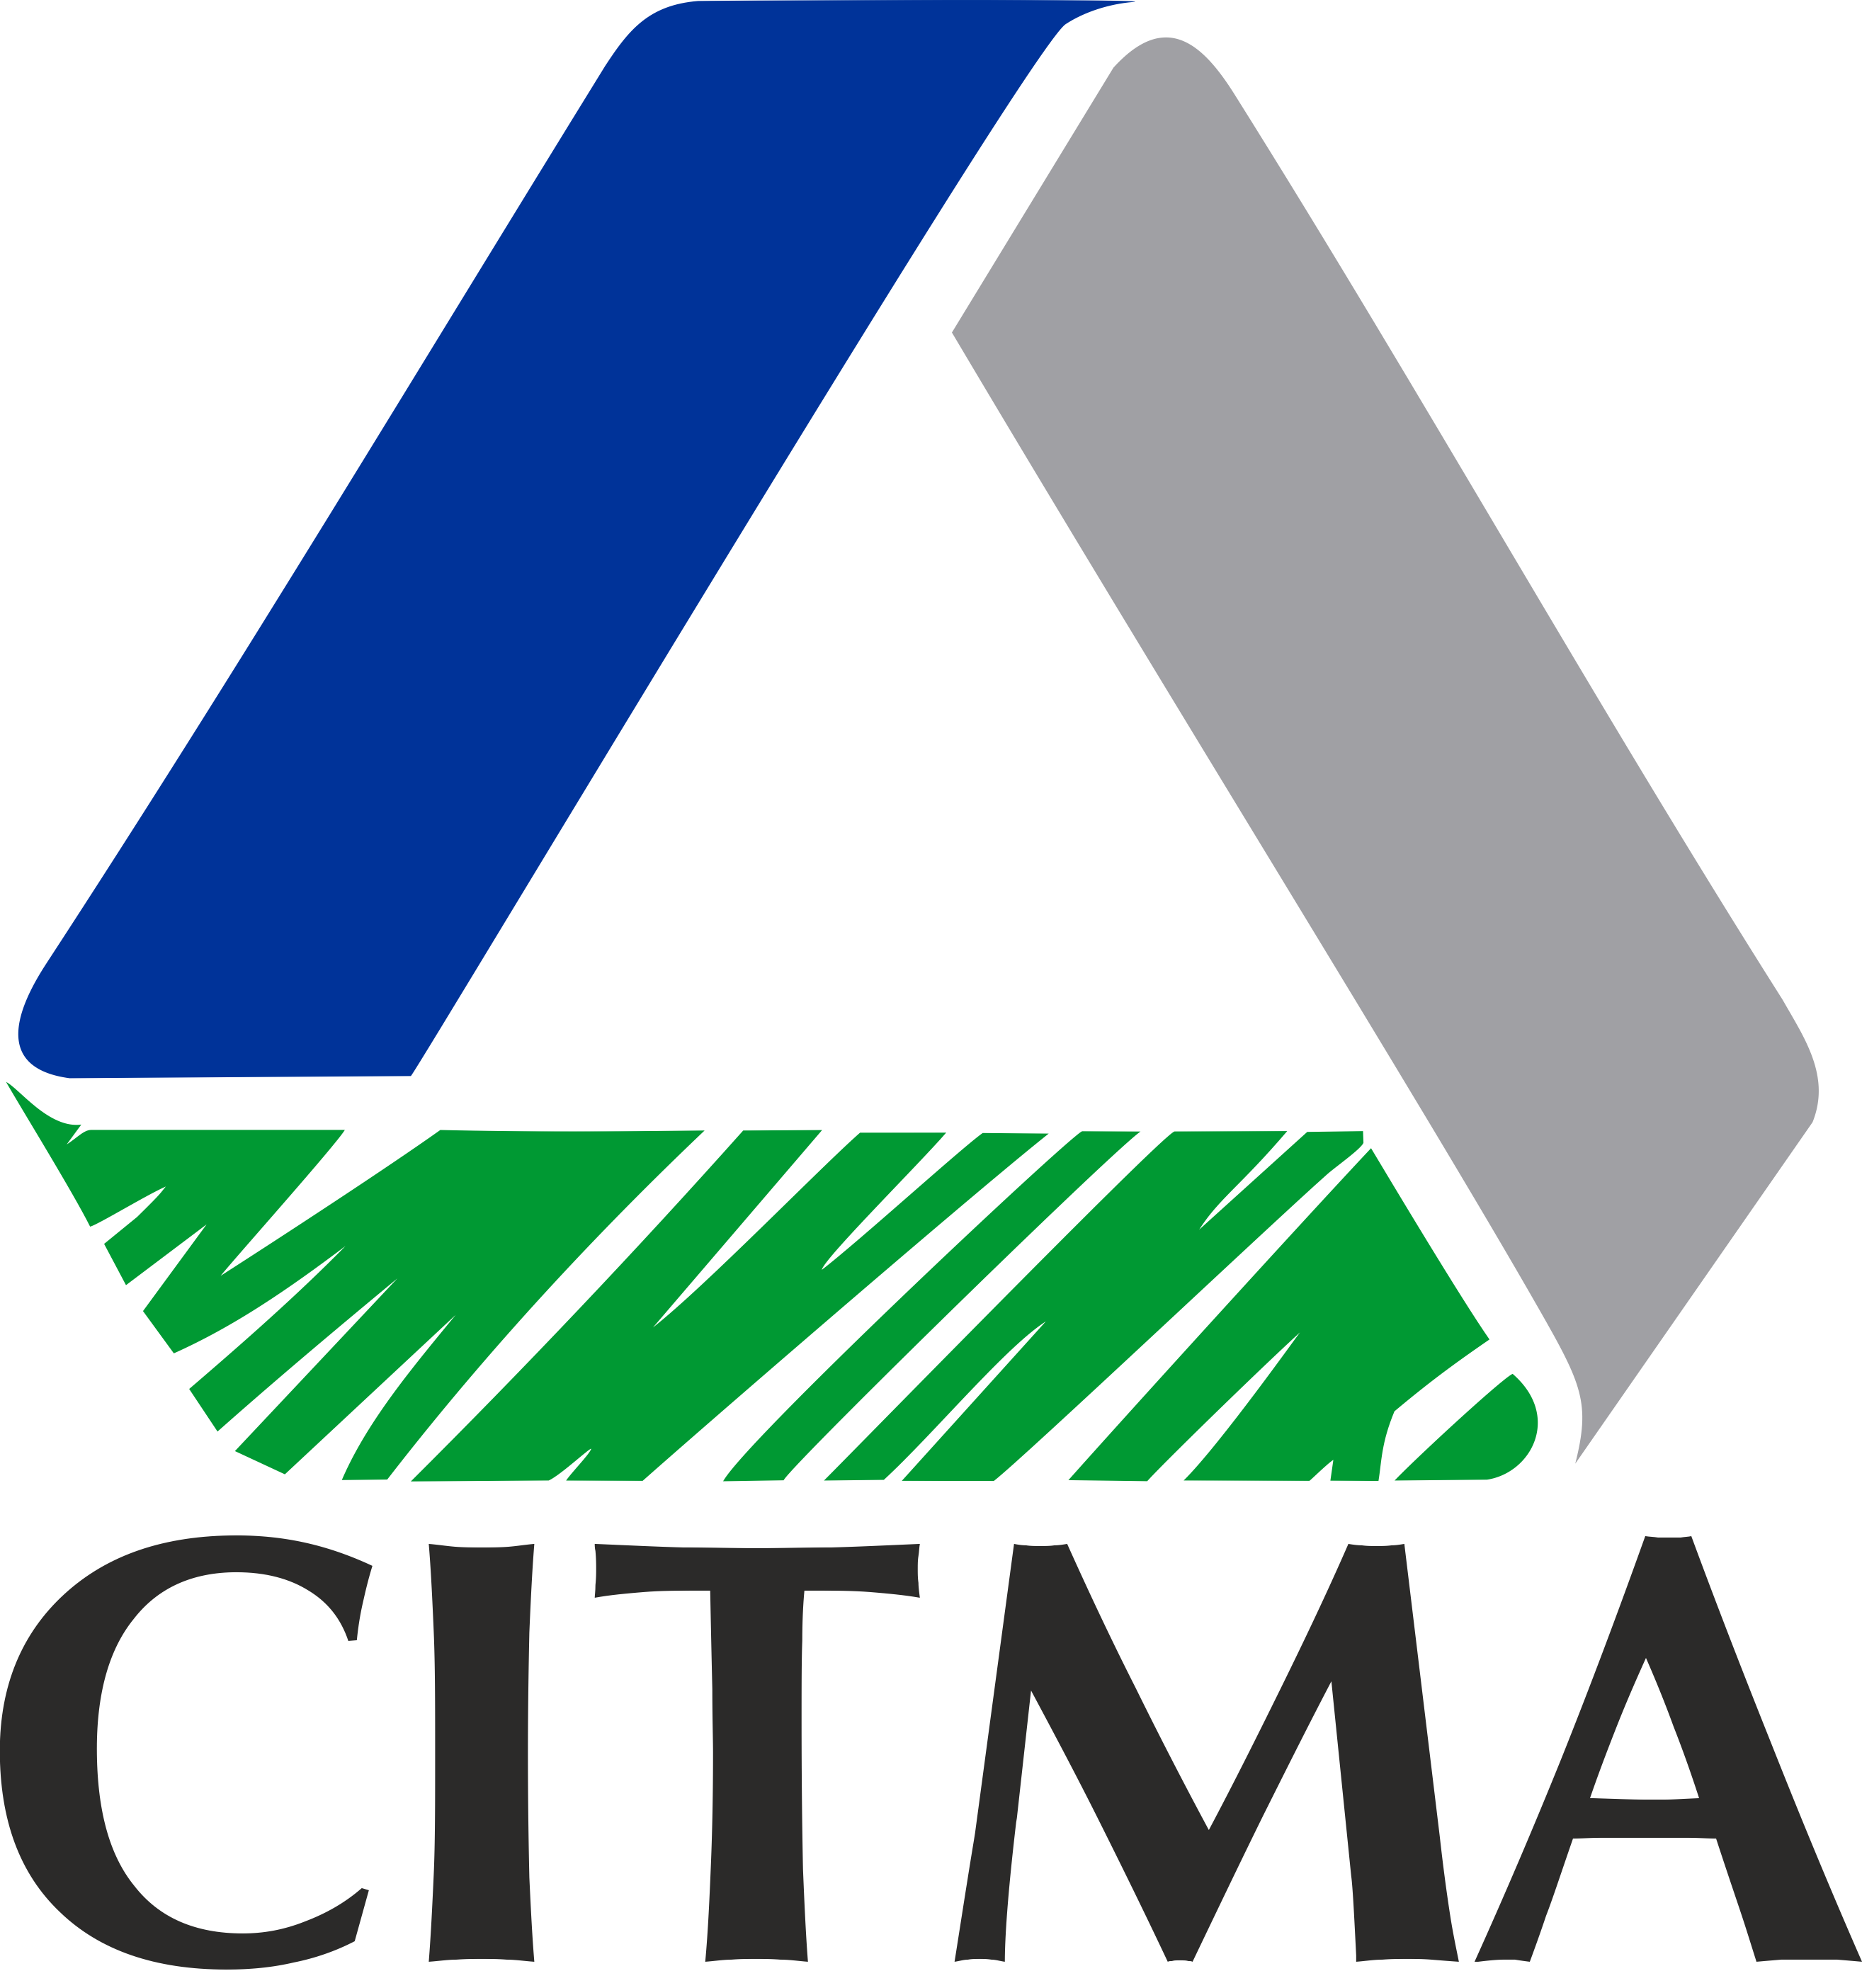 Logo_Oficial_CITMA_2.png